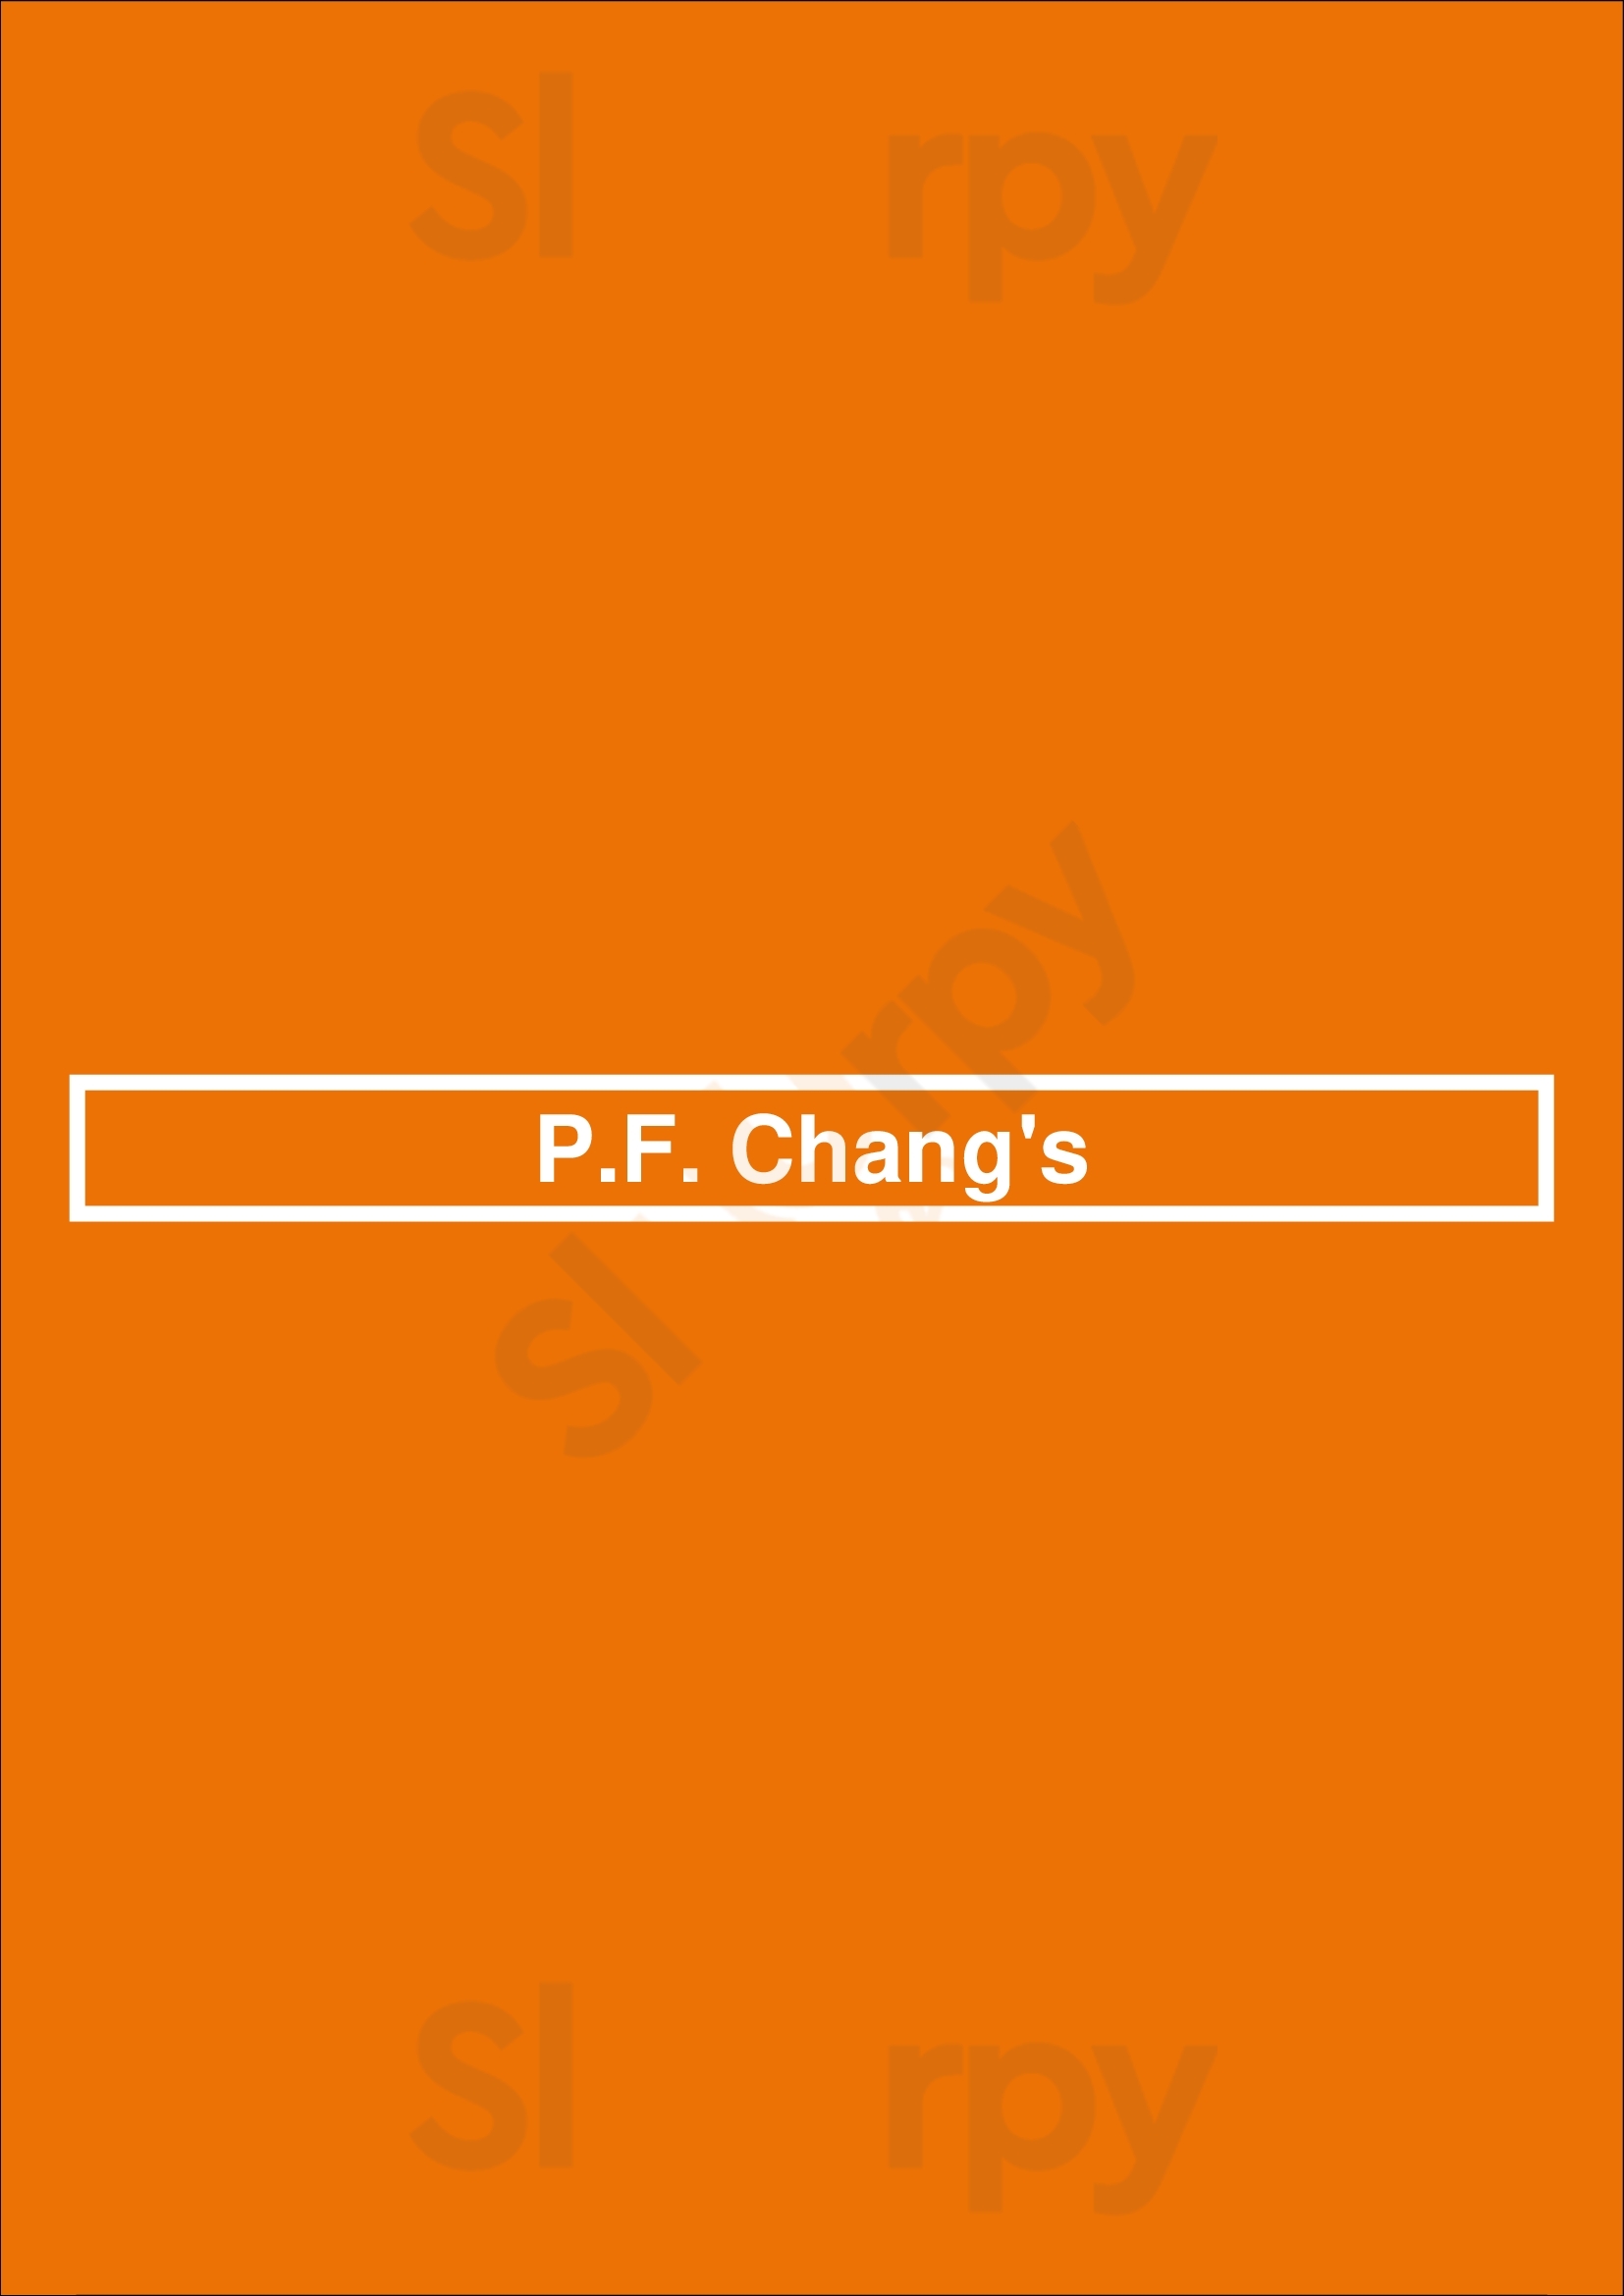 P.f. Chang's Orlando Menu - 1